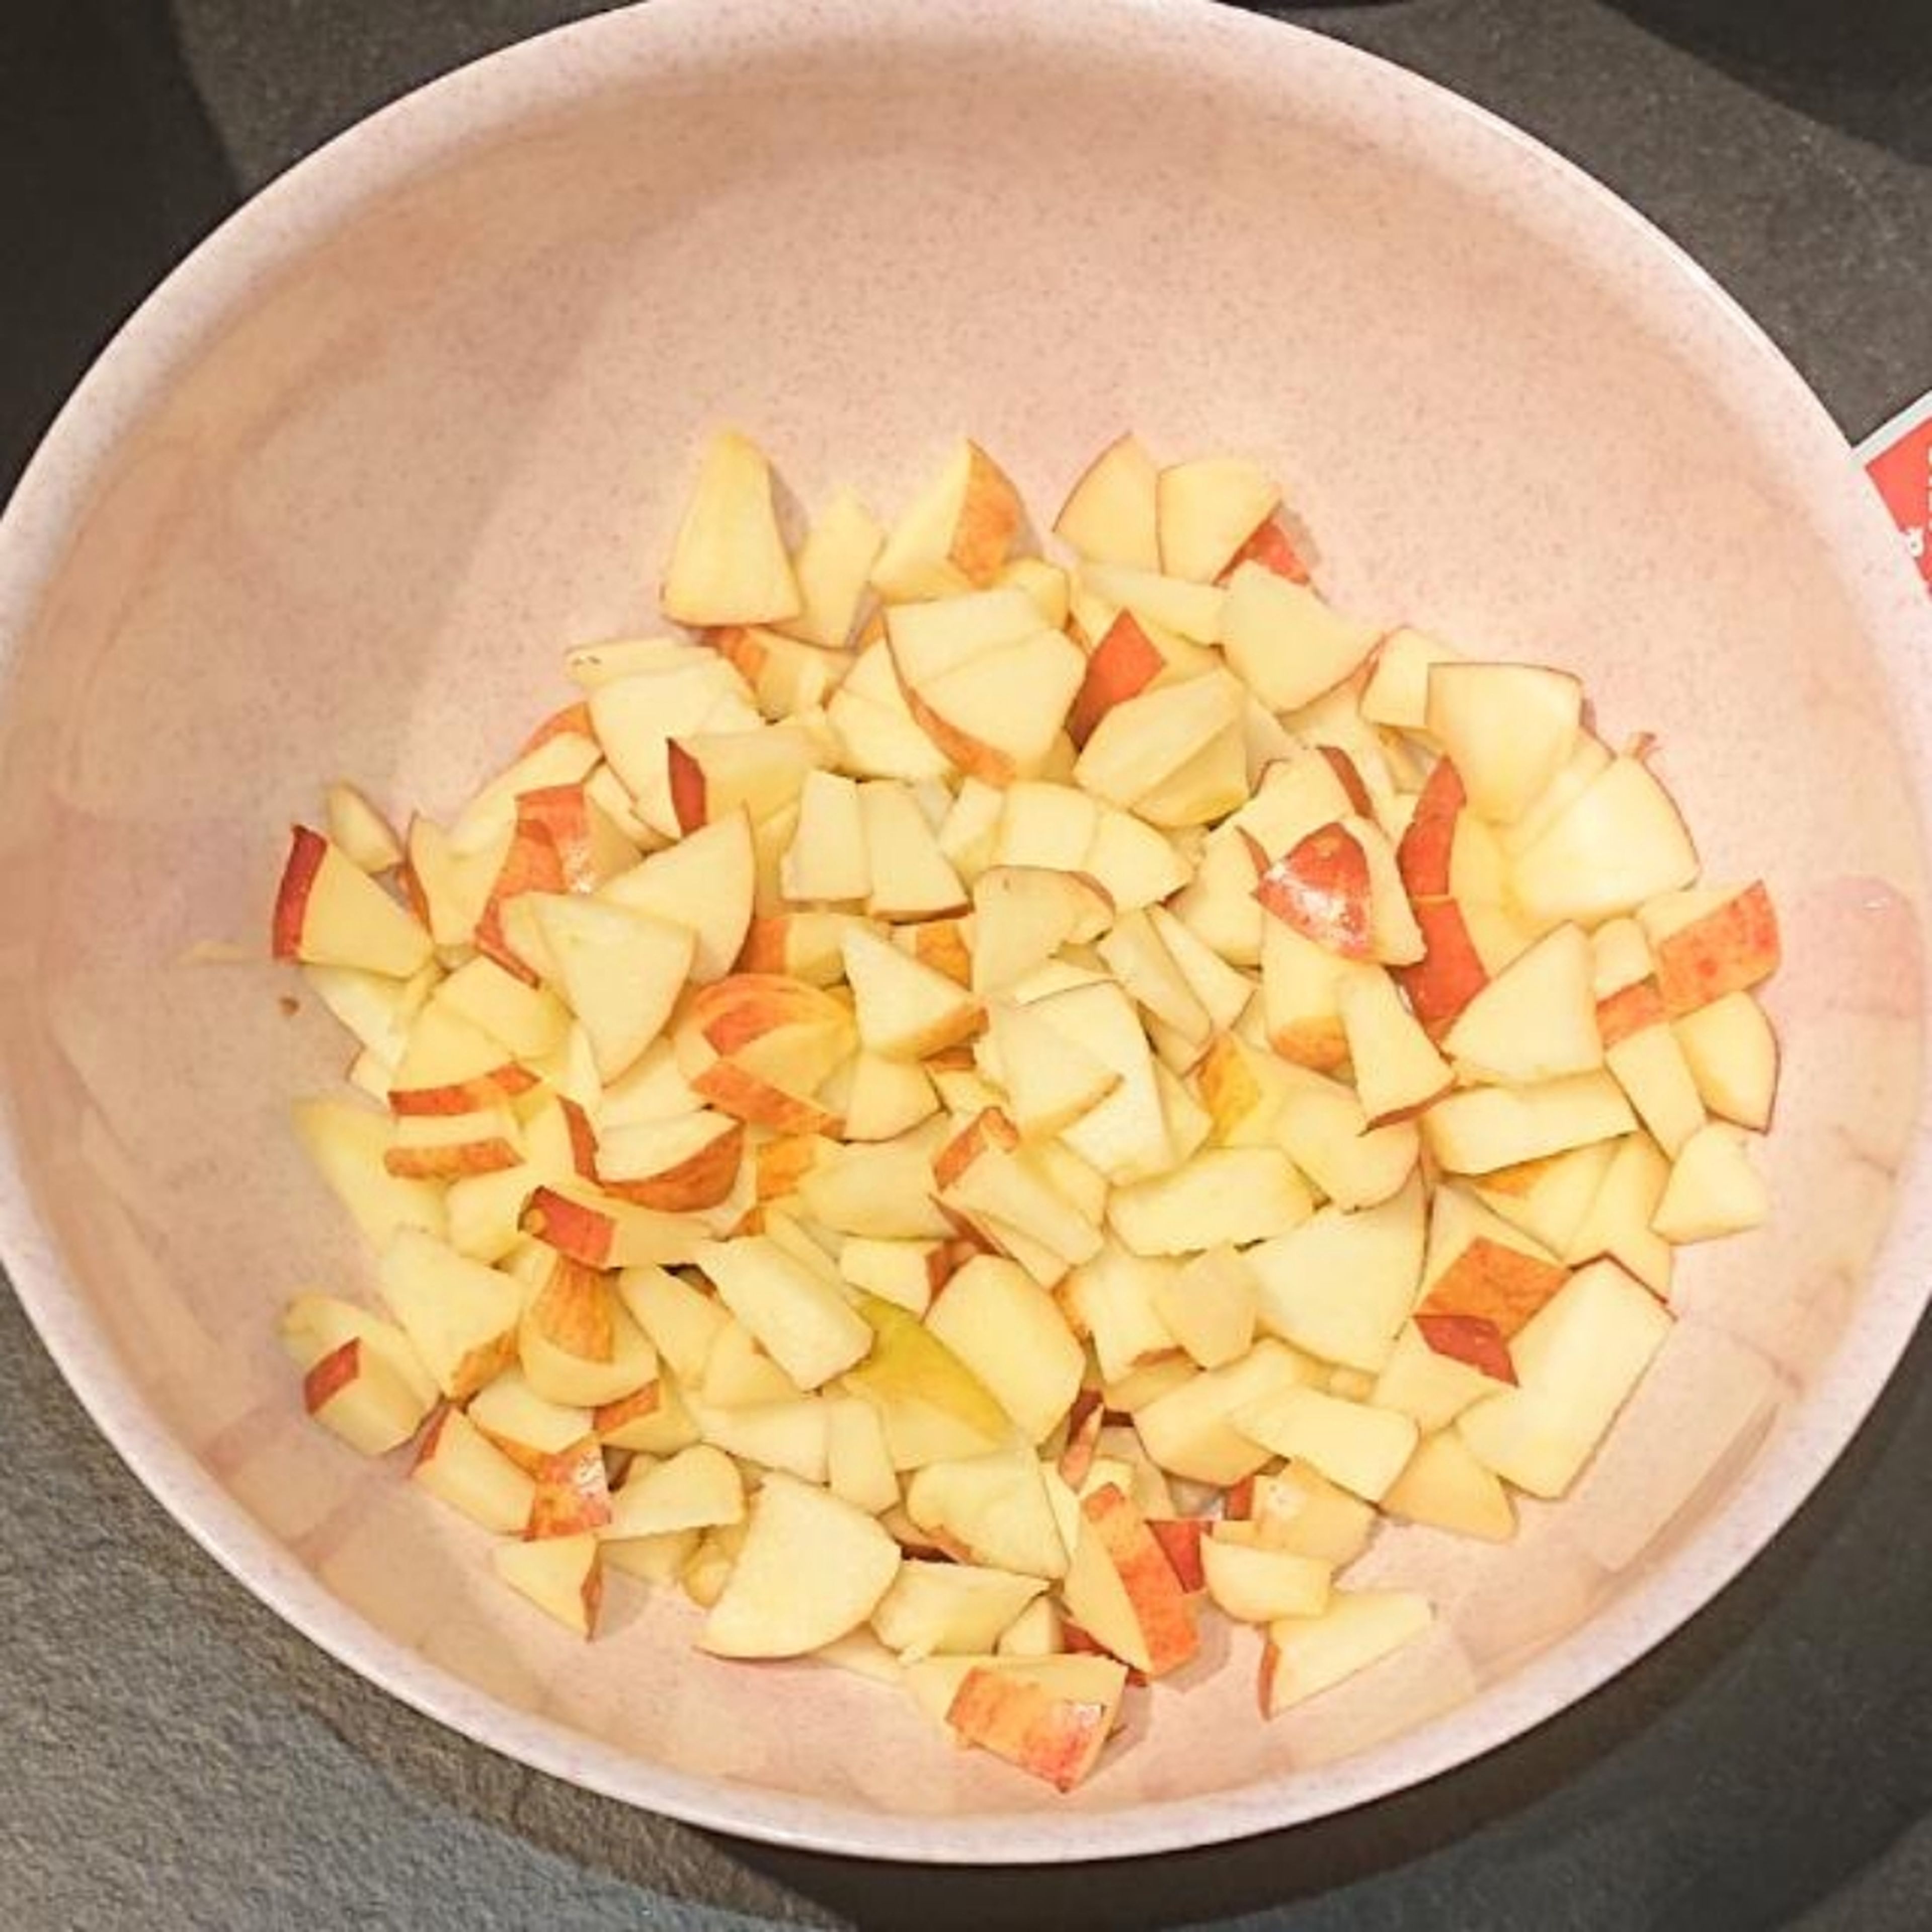 Die Äpfel waschen, entkernen und in kleine Stücke schneiden.